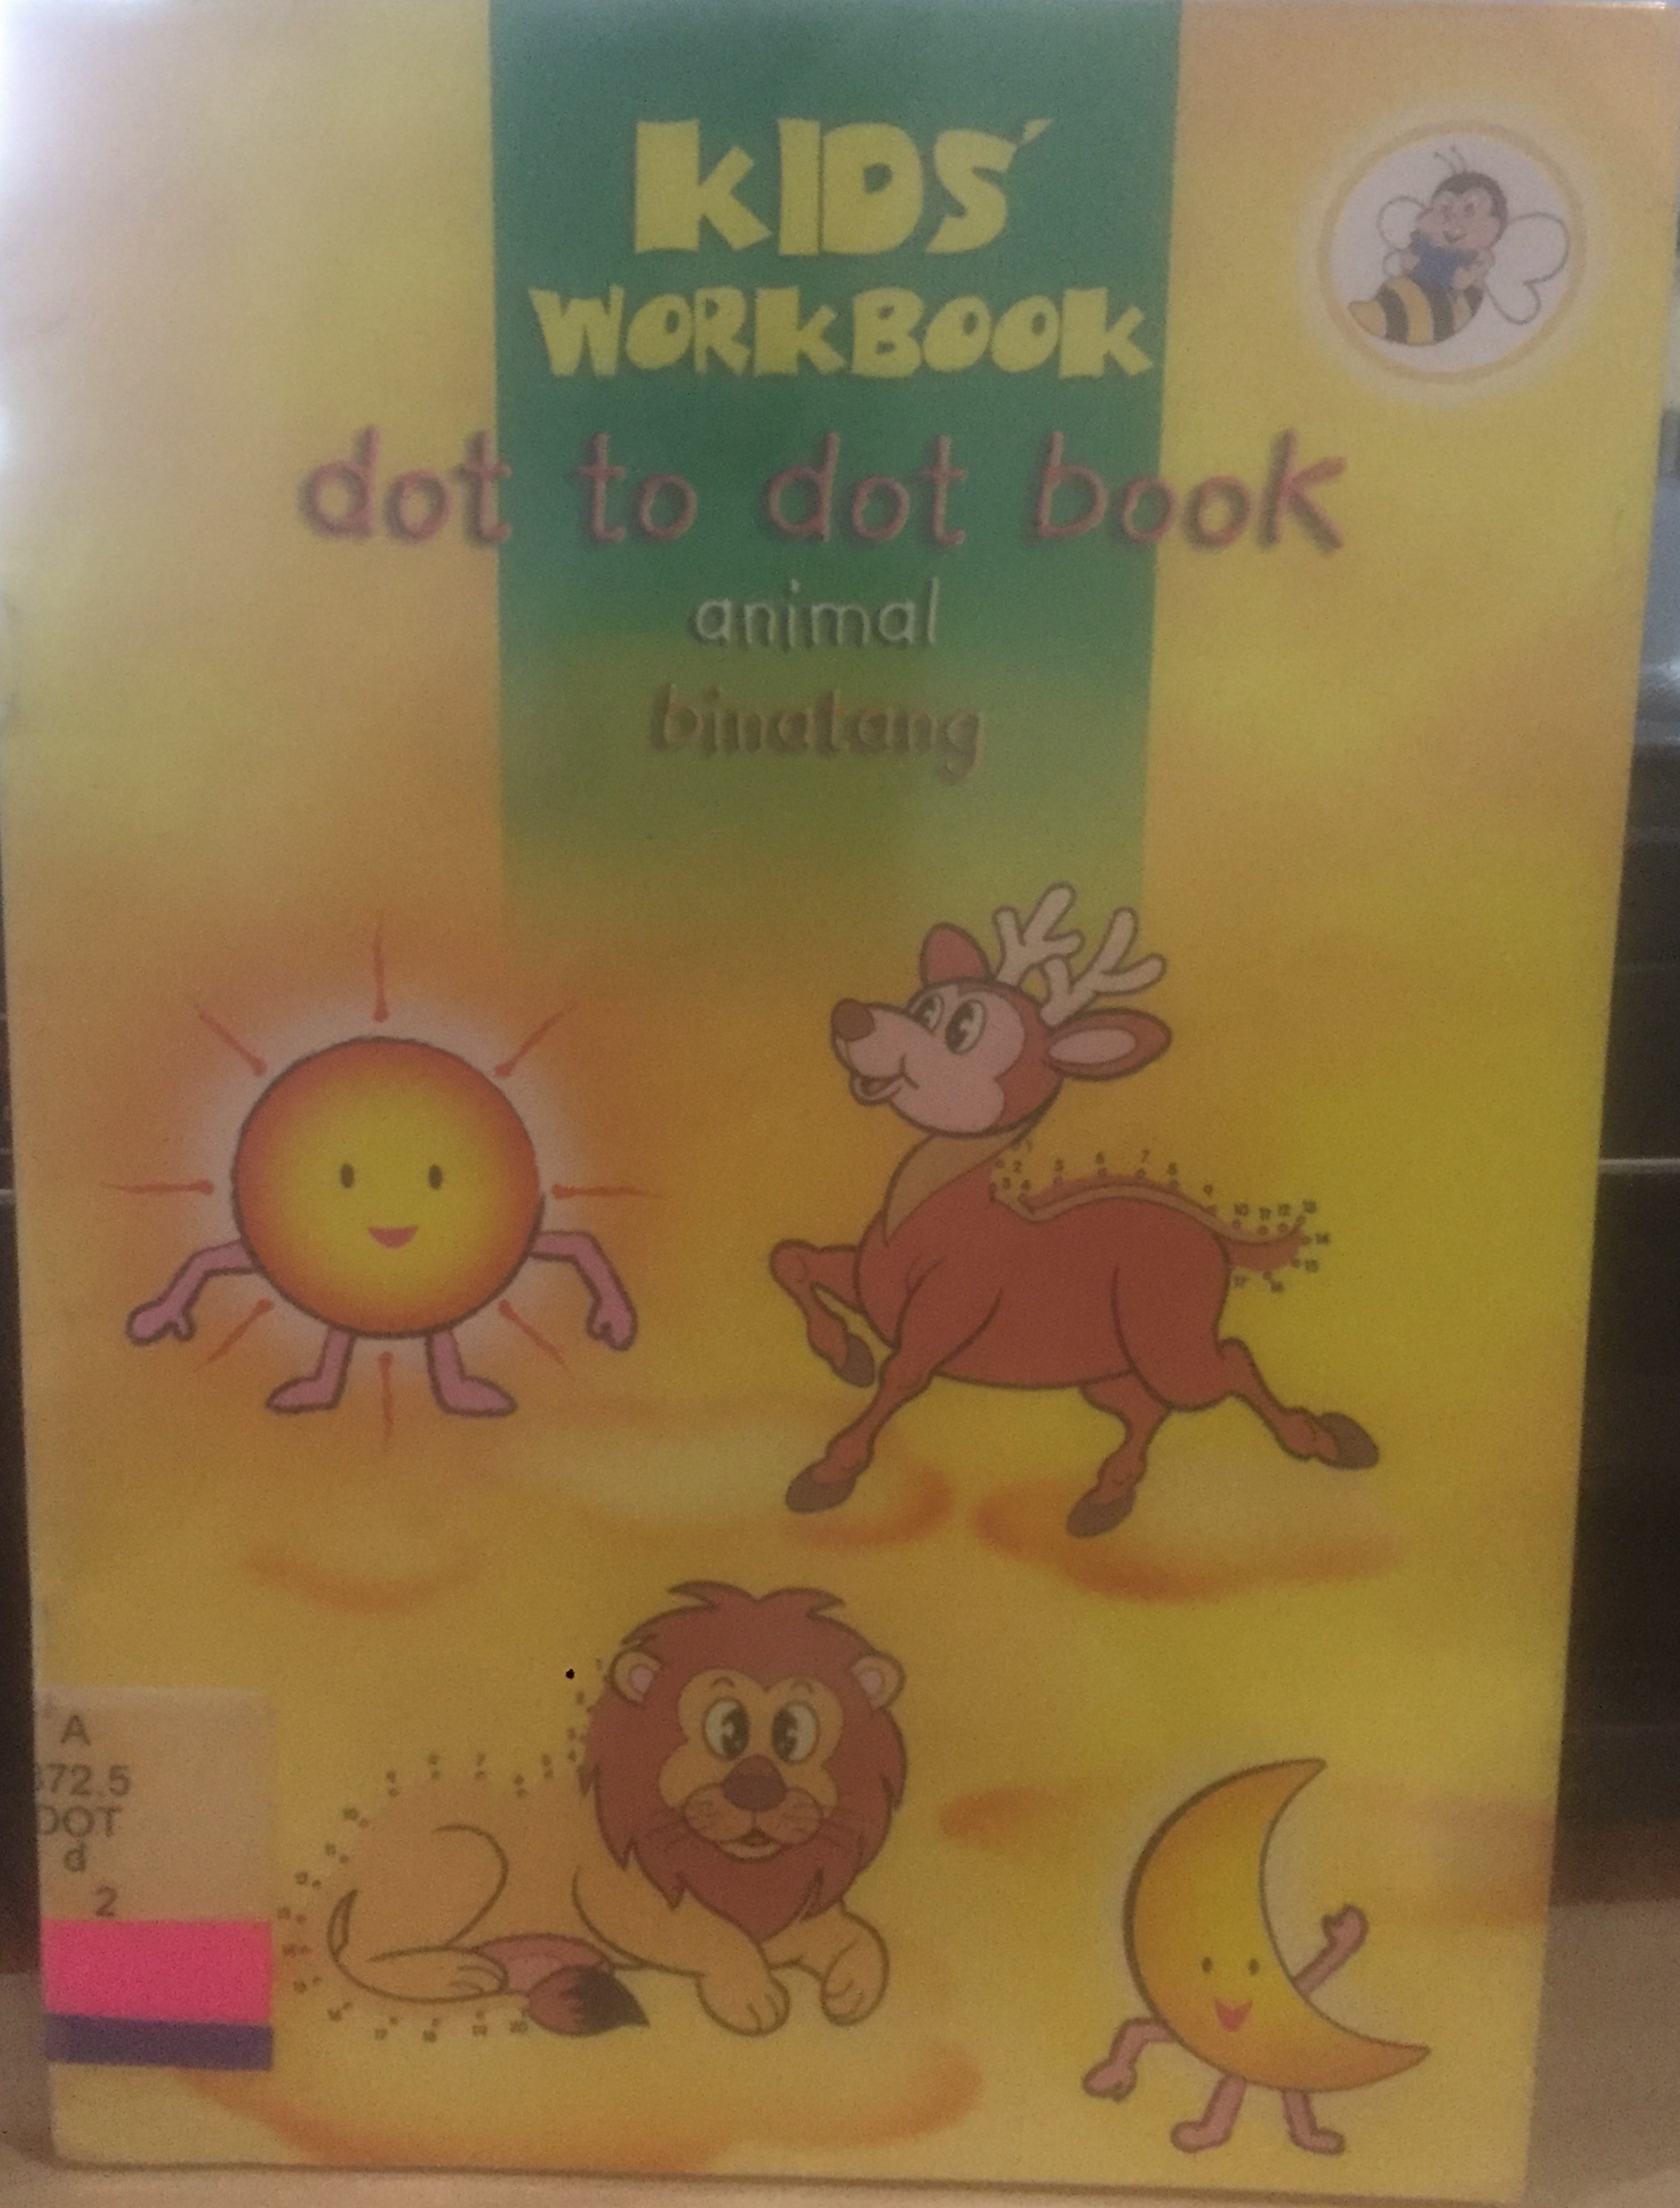 DOT to dot book animal binatang